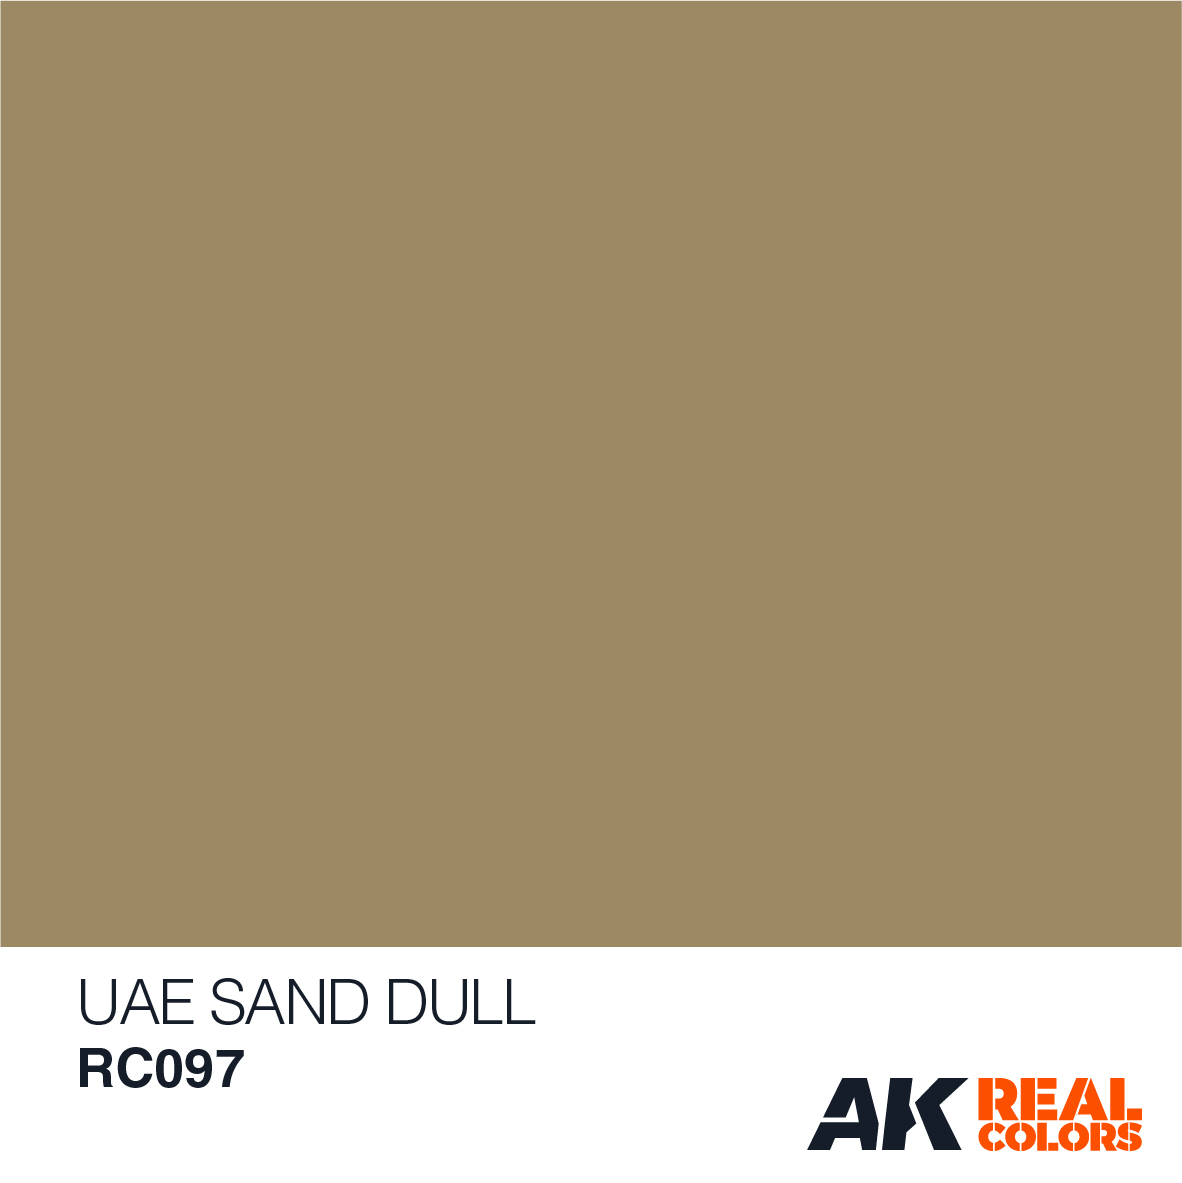 UAE Sand Dull